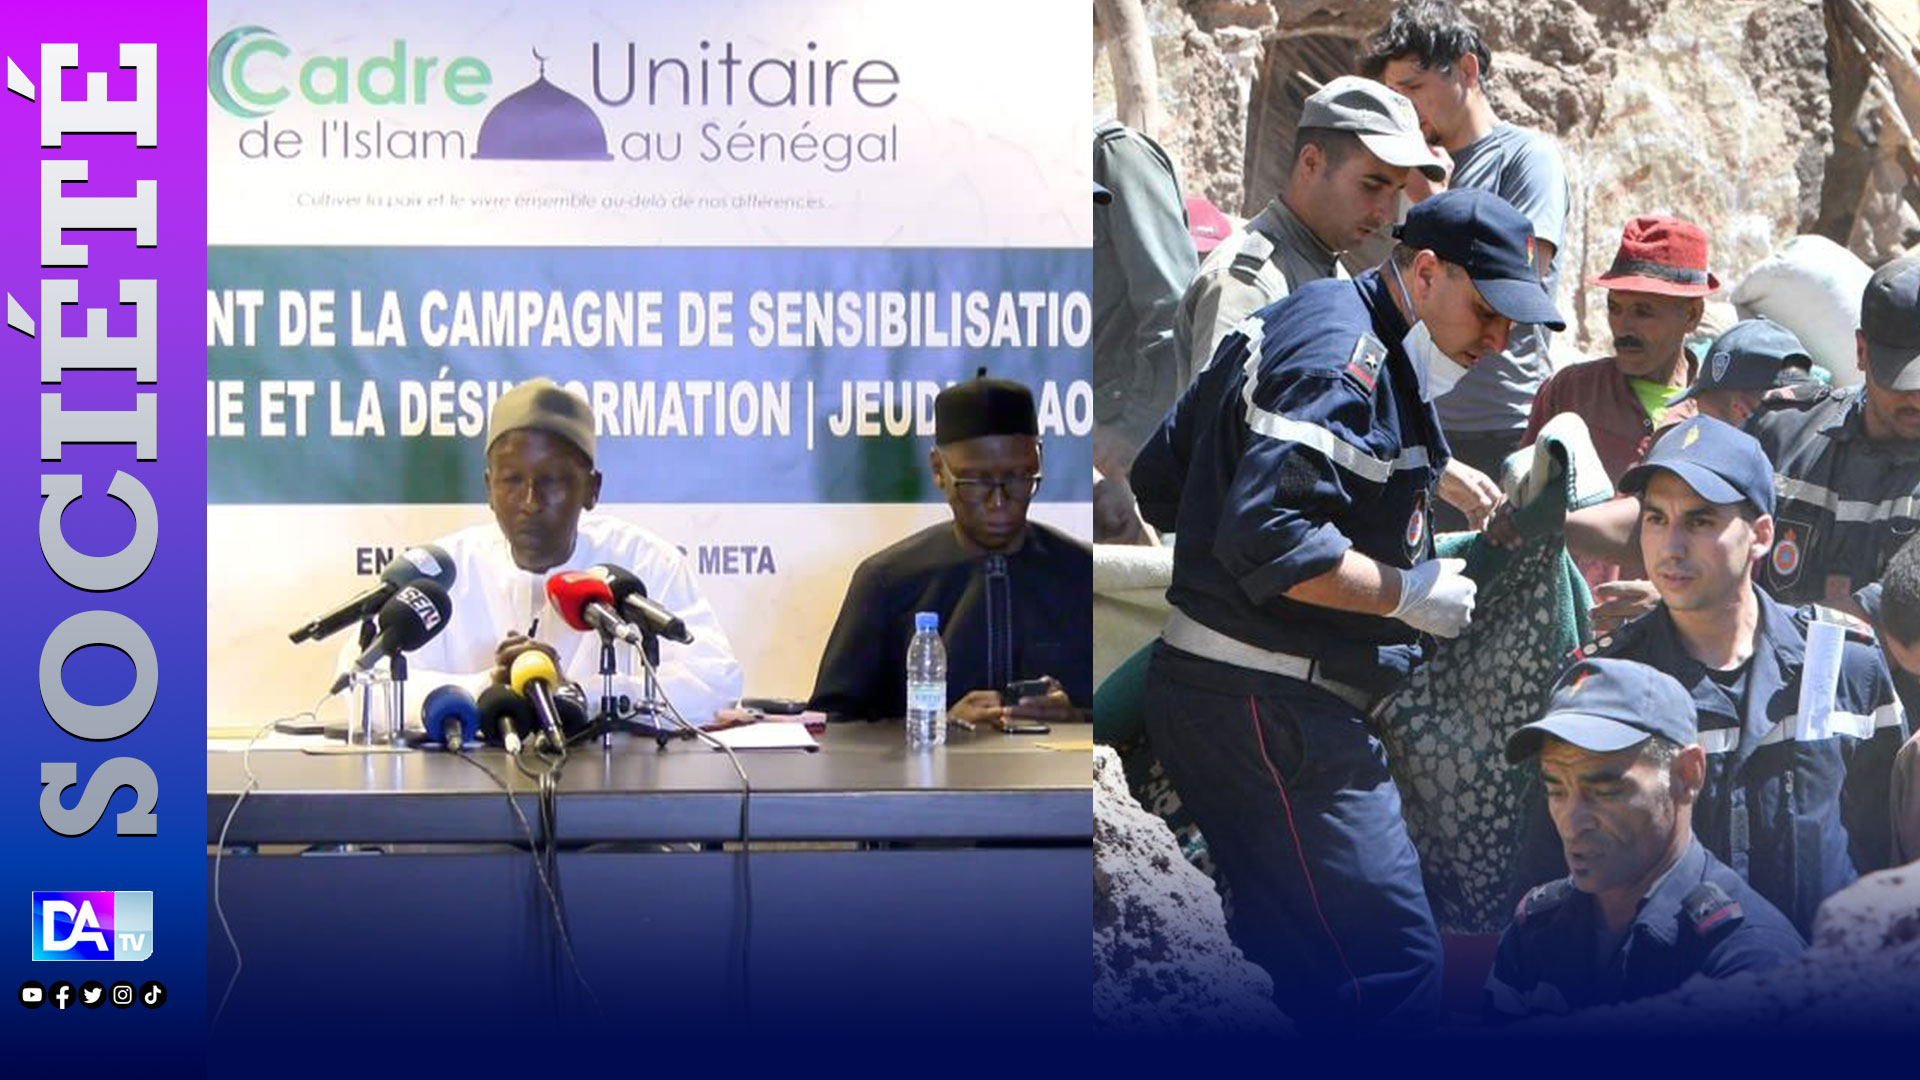 Séisme au Maroc: Le cadre unitaire de l'islam au Sénégal( CUDIS) appelle à un élan de solidarité au profit du peuple marocain